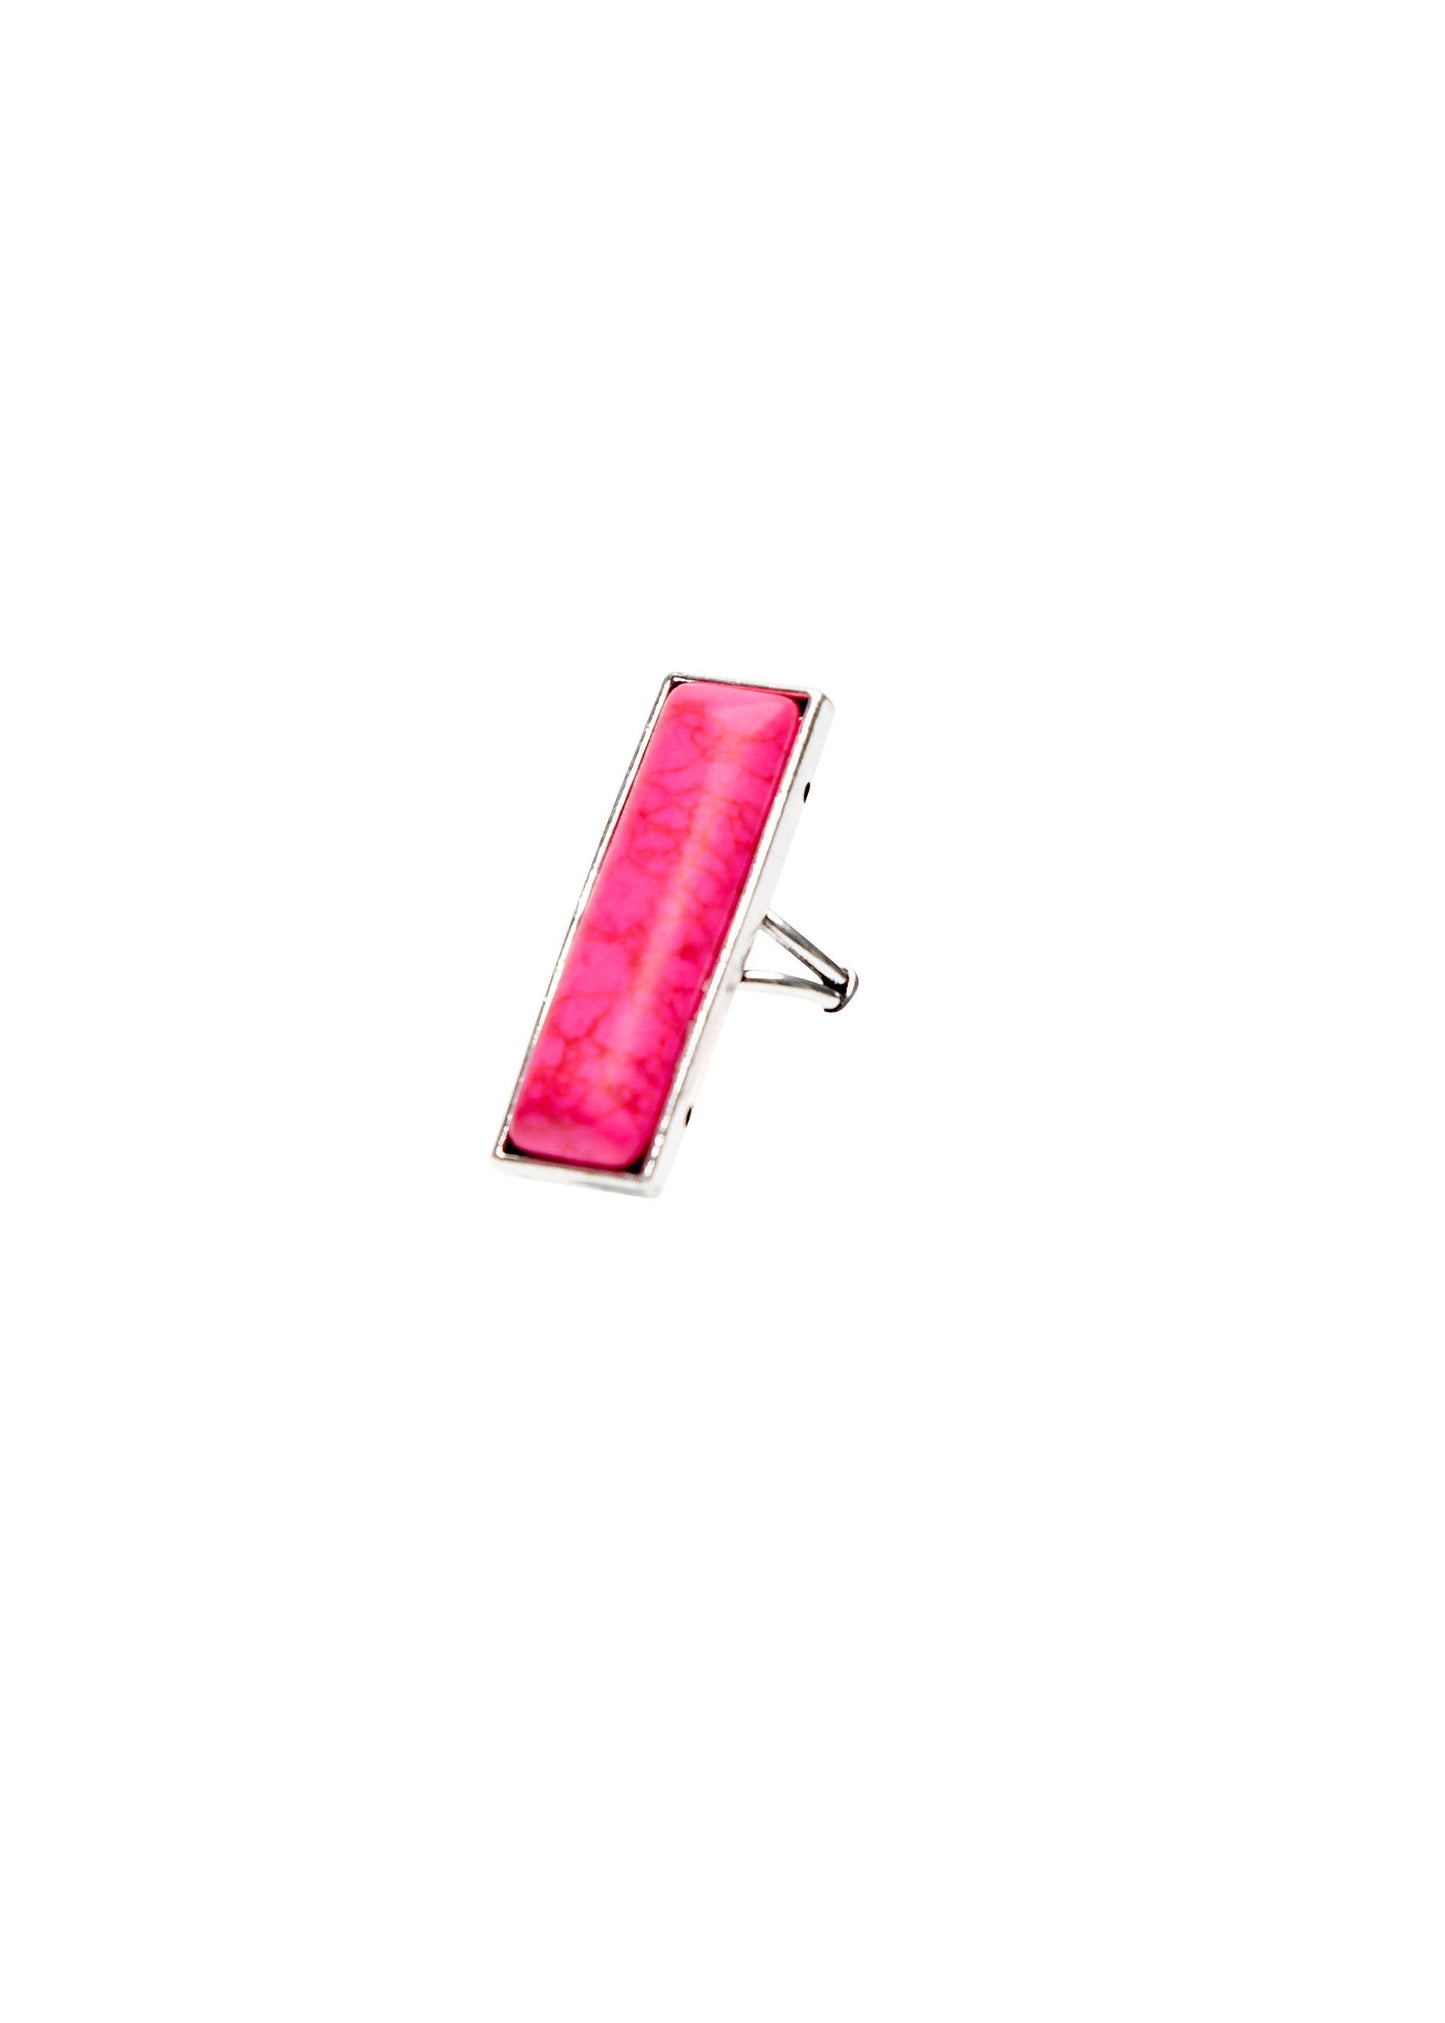 West & Co. - Adjustable Pink Bar Ring